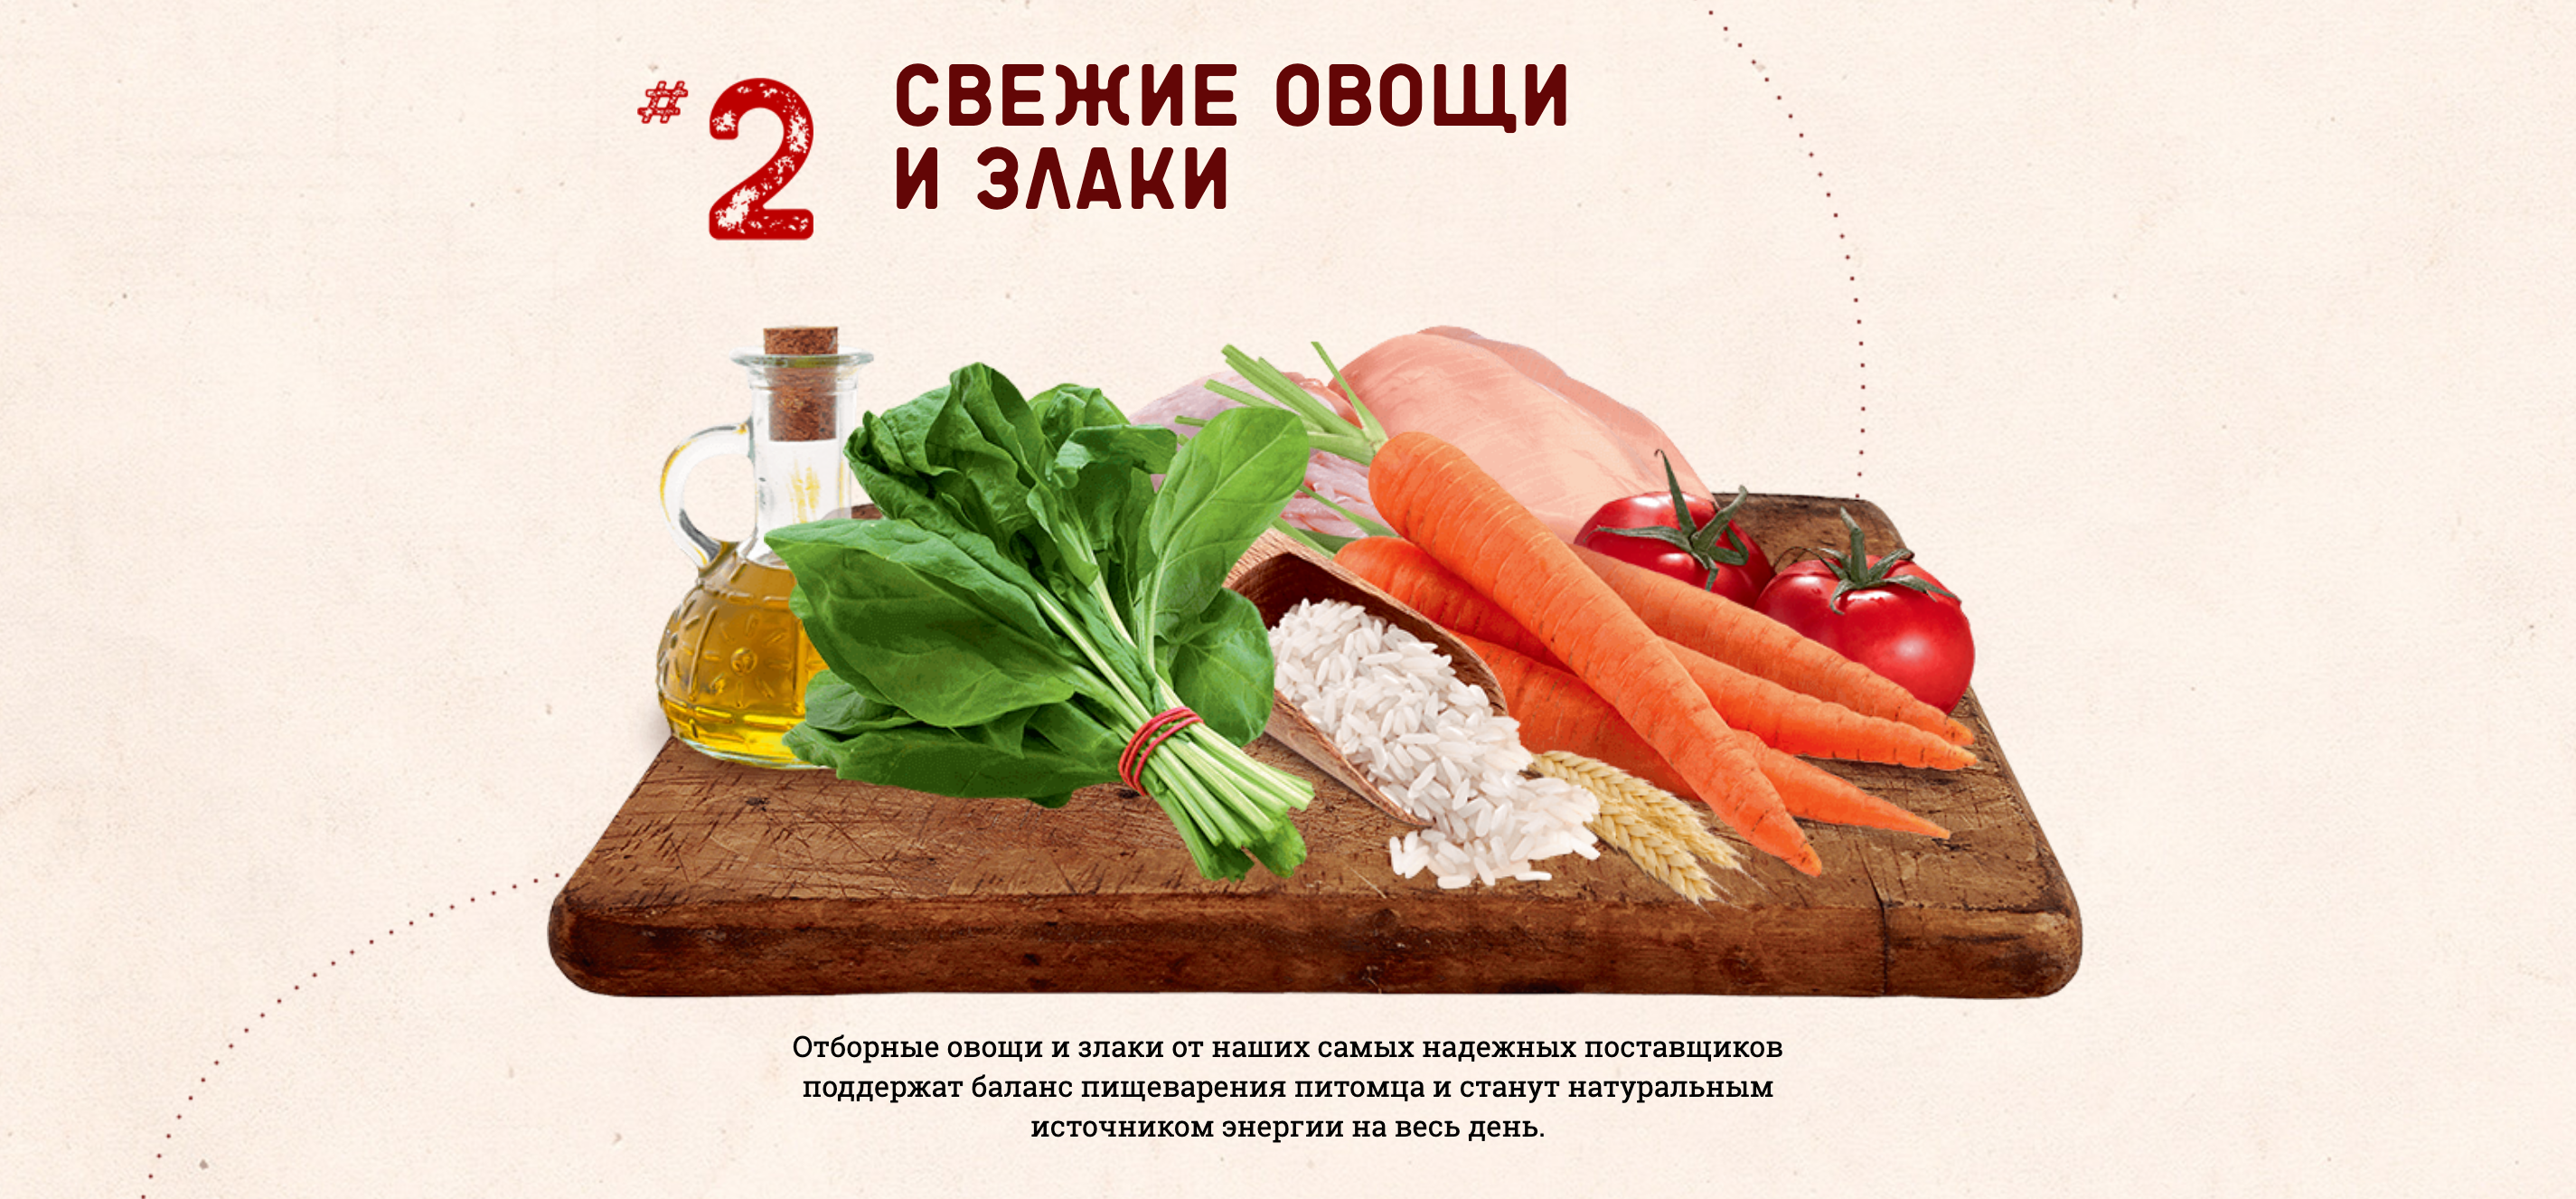 купить корм NATURE’S TABLE с бесплатной доставкой в Калининграде